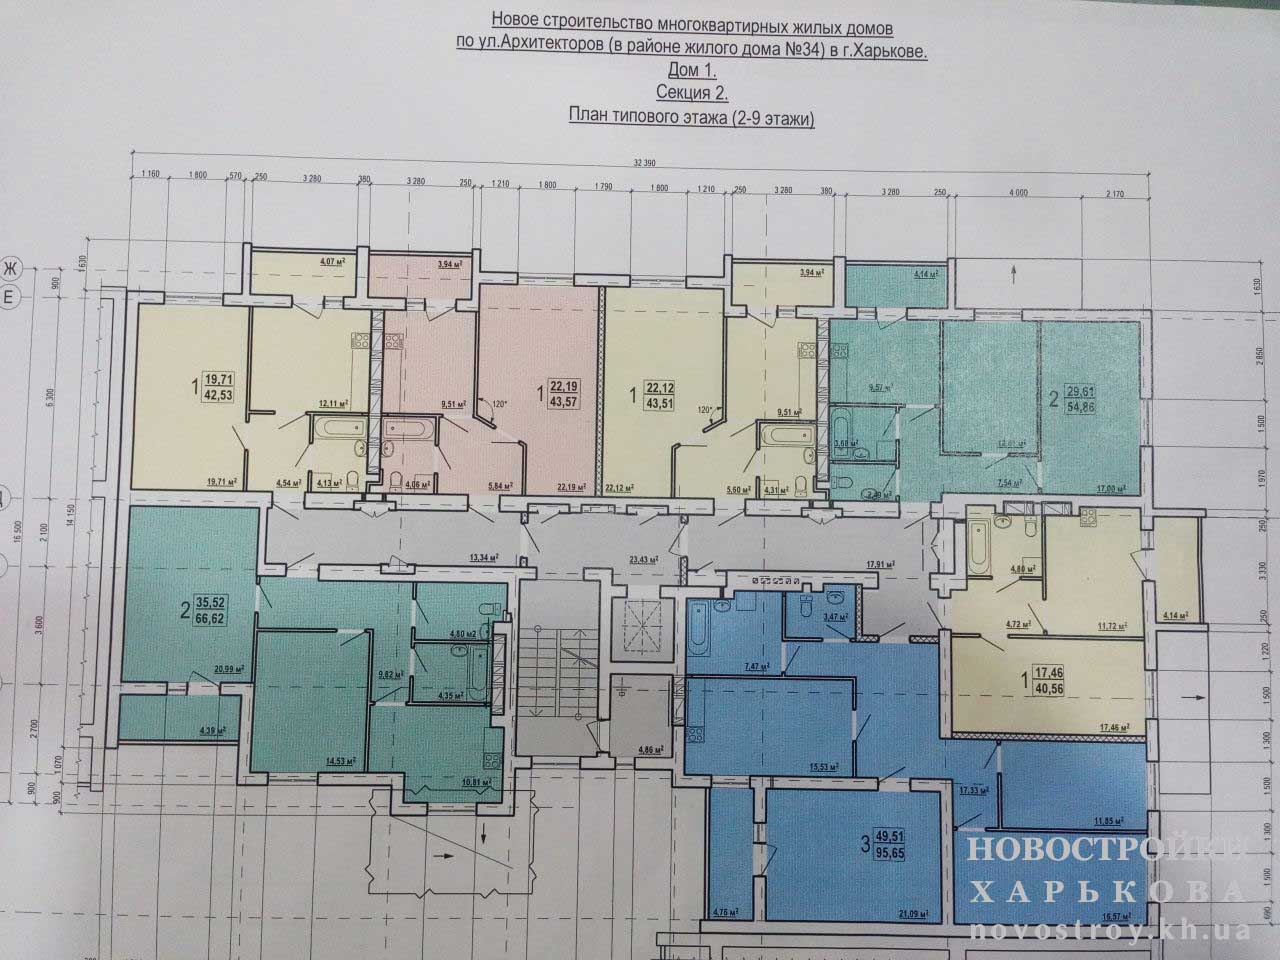 План, ЖК Домостроительная, ул. Архитекторов, дом 1 (секция 2), 2-9 этаж